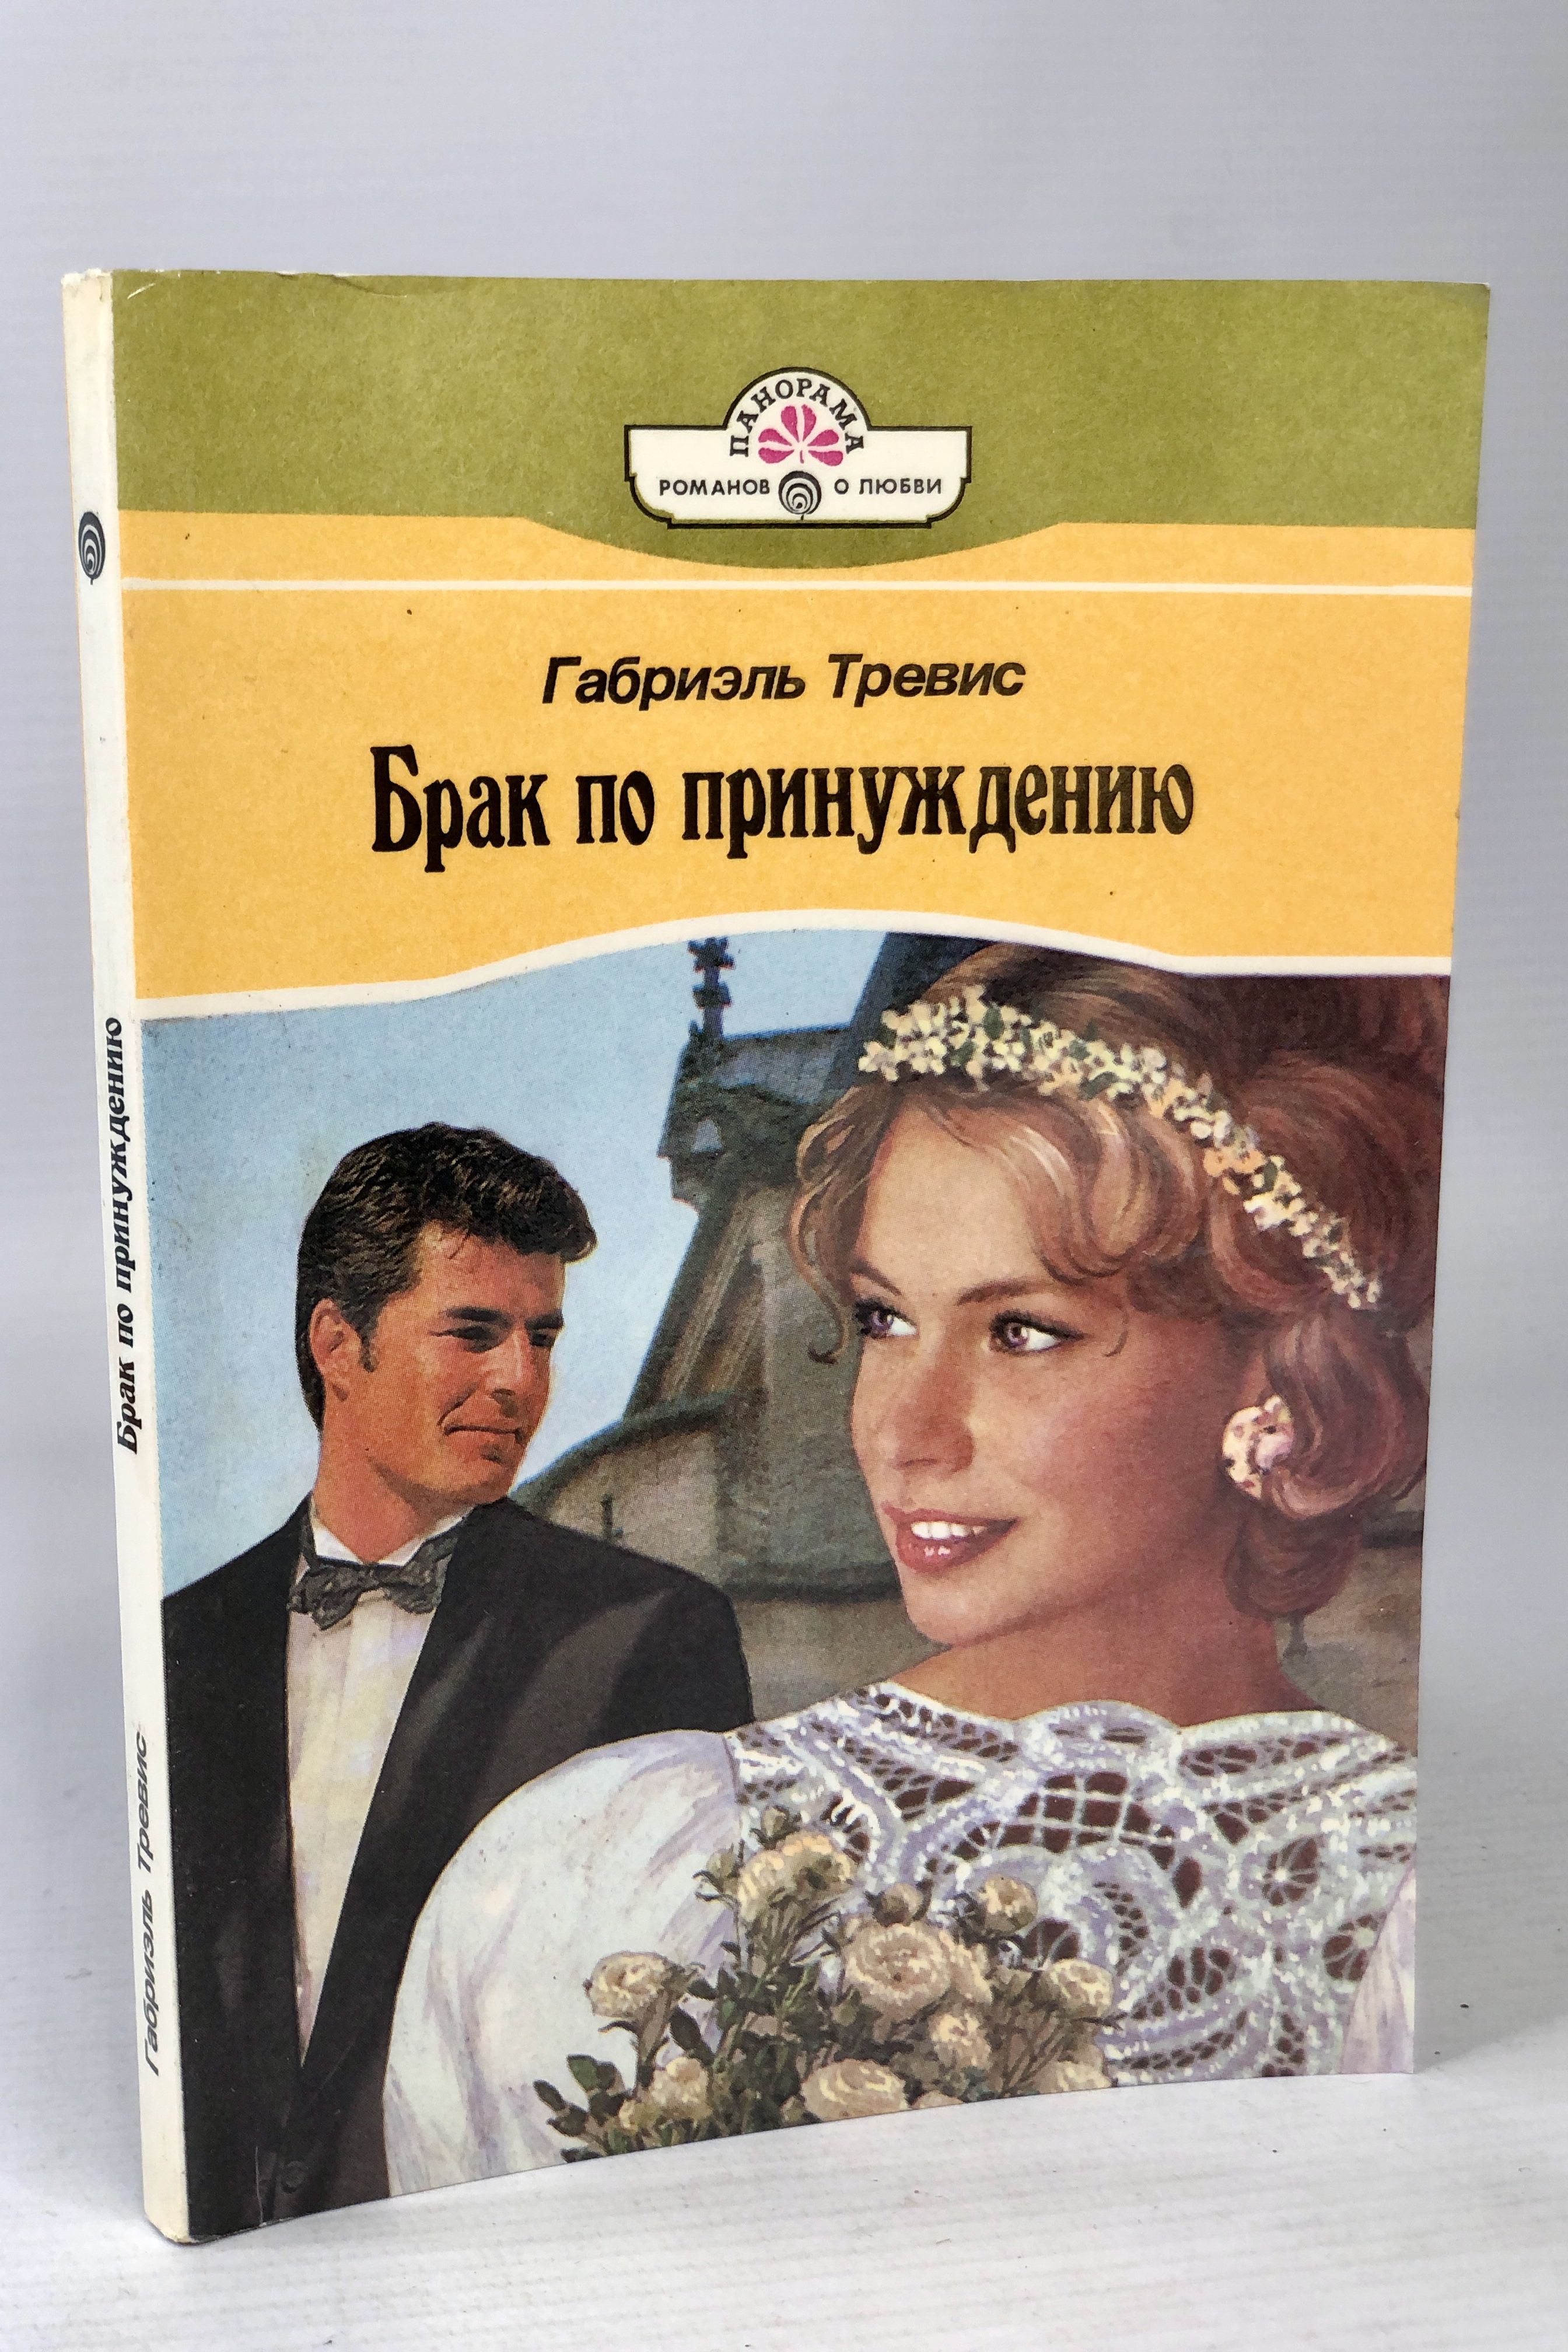 Читать романы принуждение. Книга про брак. Книга про брак по принуждению популярная. Образцовое супружество книга.